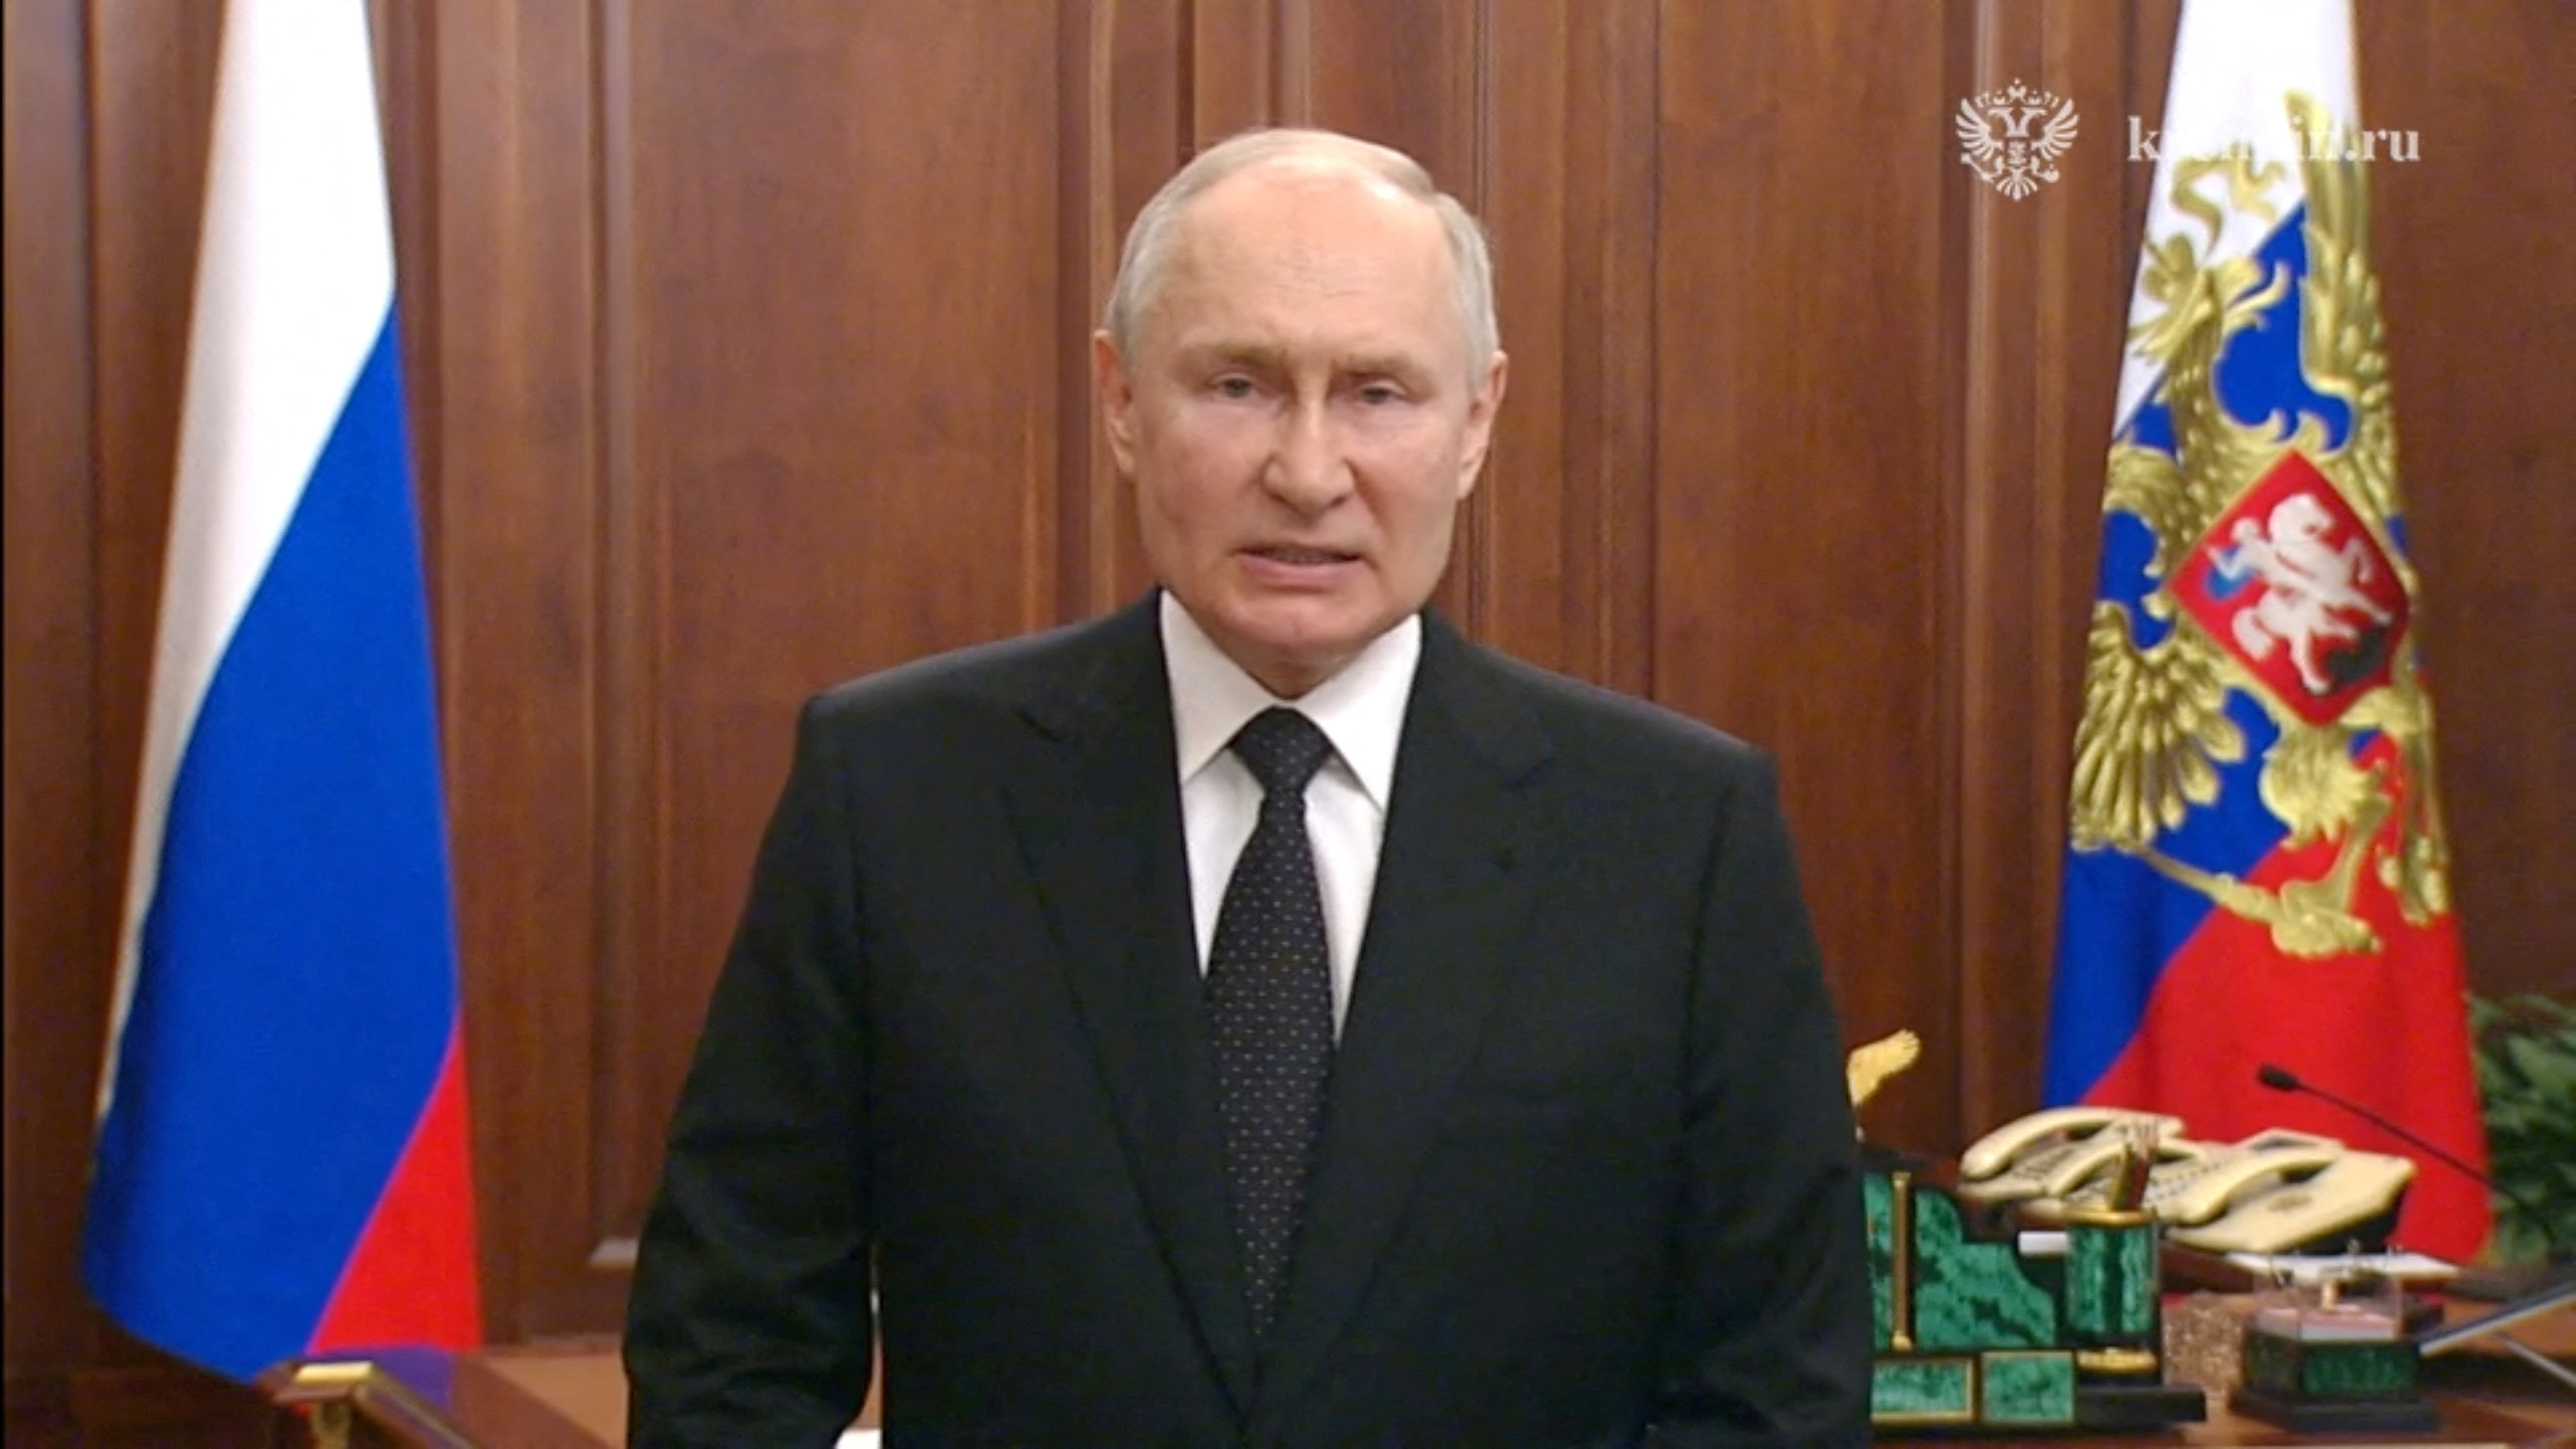 El presidente ruso, Vladimir Putin, da un discurso televisado de emergencia en Moscú, Rusia, el 24 de junio de 2023, en esta imagen fija tomada de un video. Kremlin.ru/Handout via REUTERS